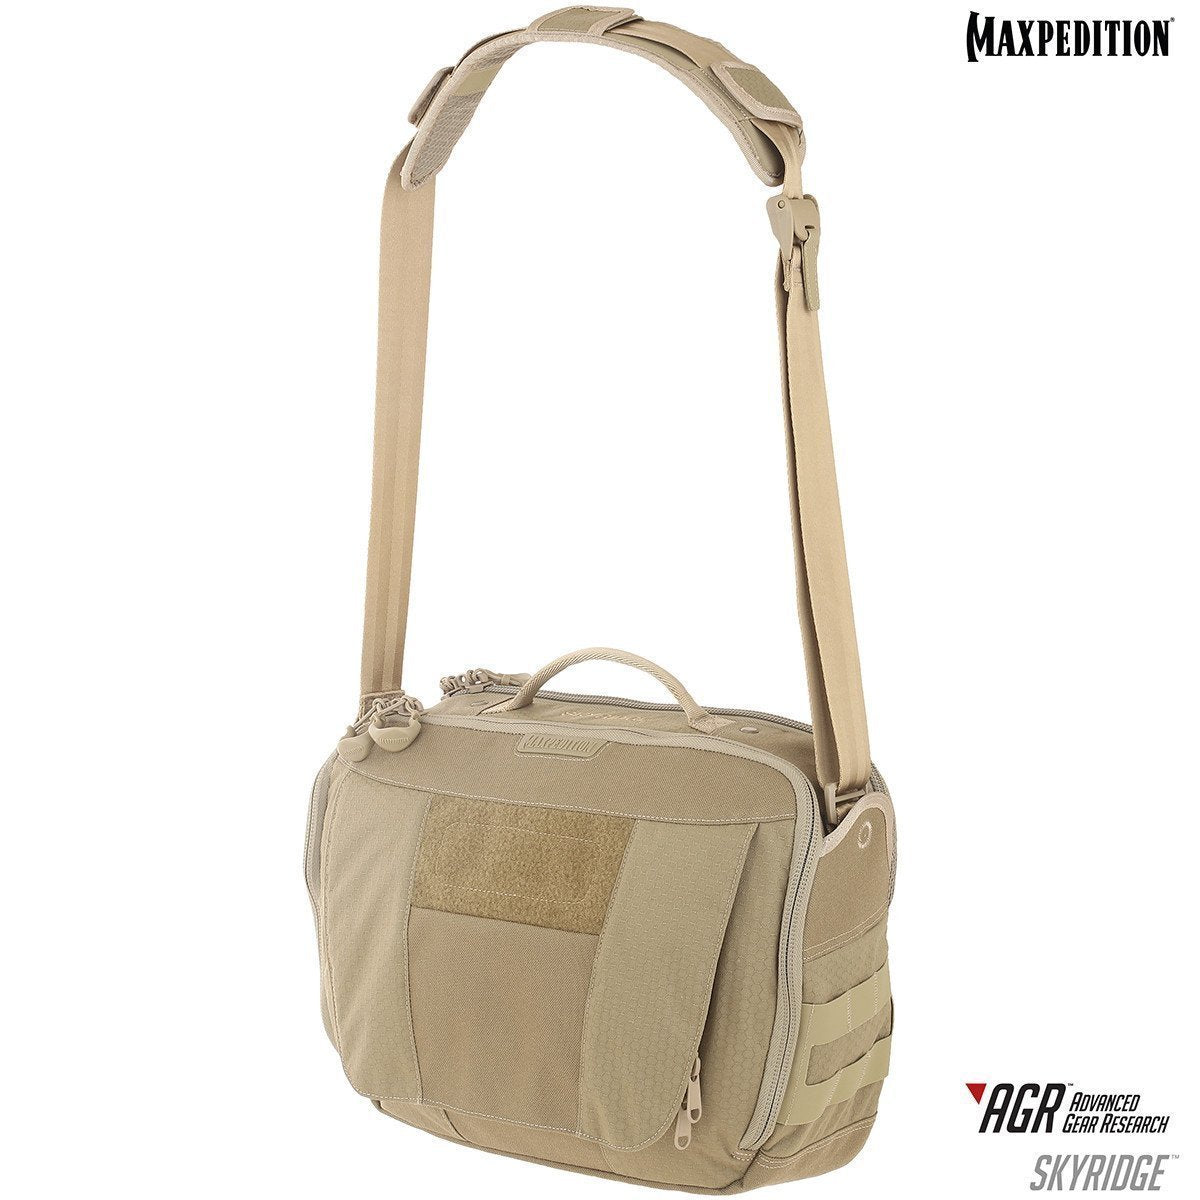 Maxpedition Skyridge Tech Messenger Bag 12.5L Tan Tactical Distributors Ltd New Zealand